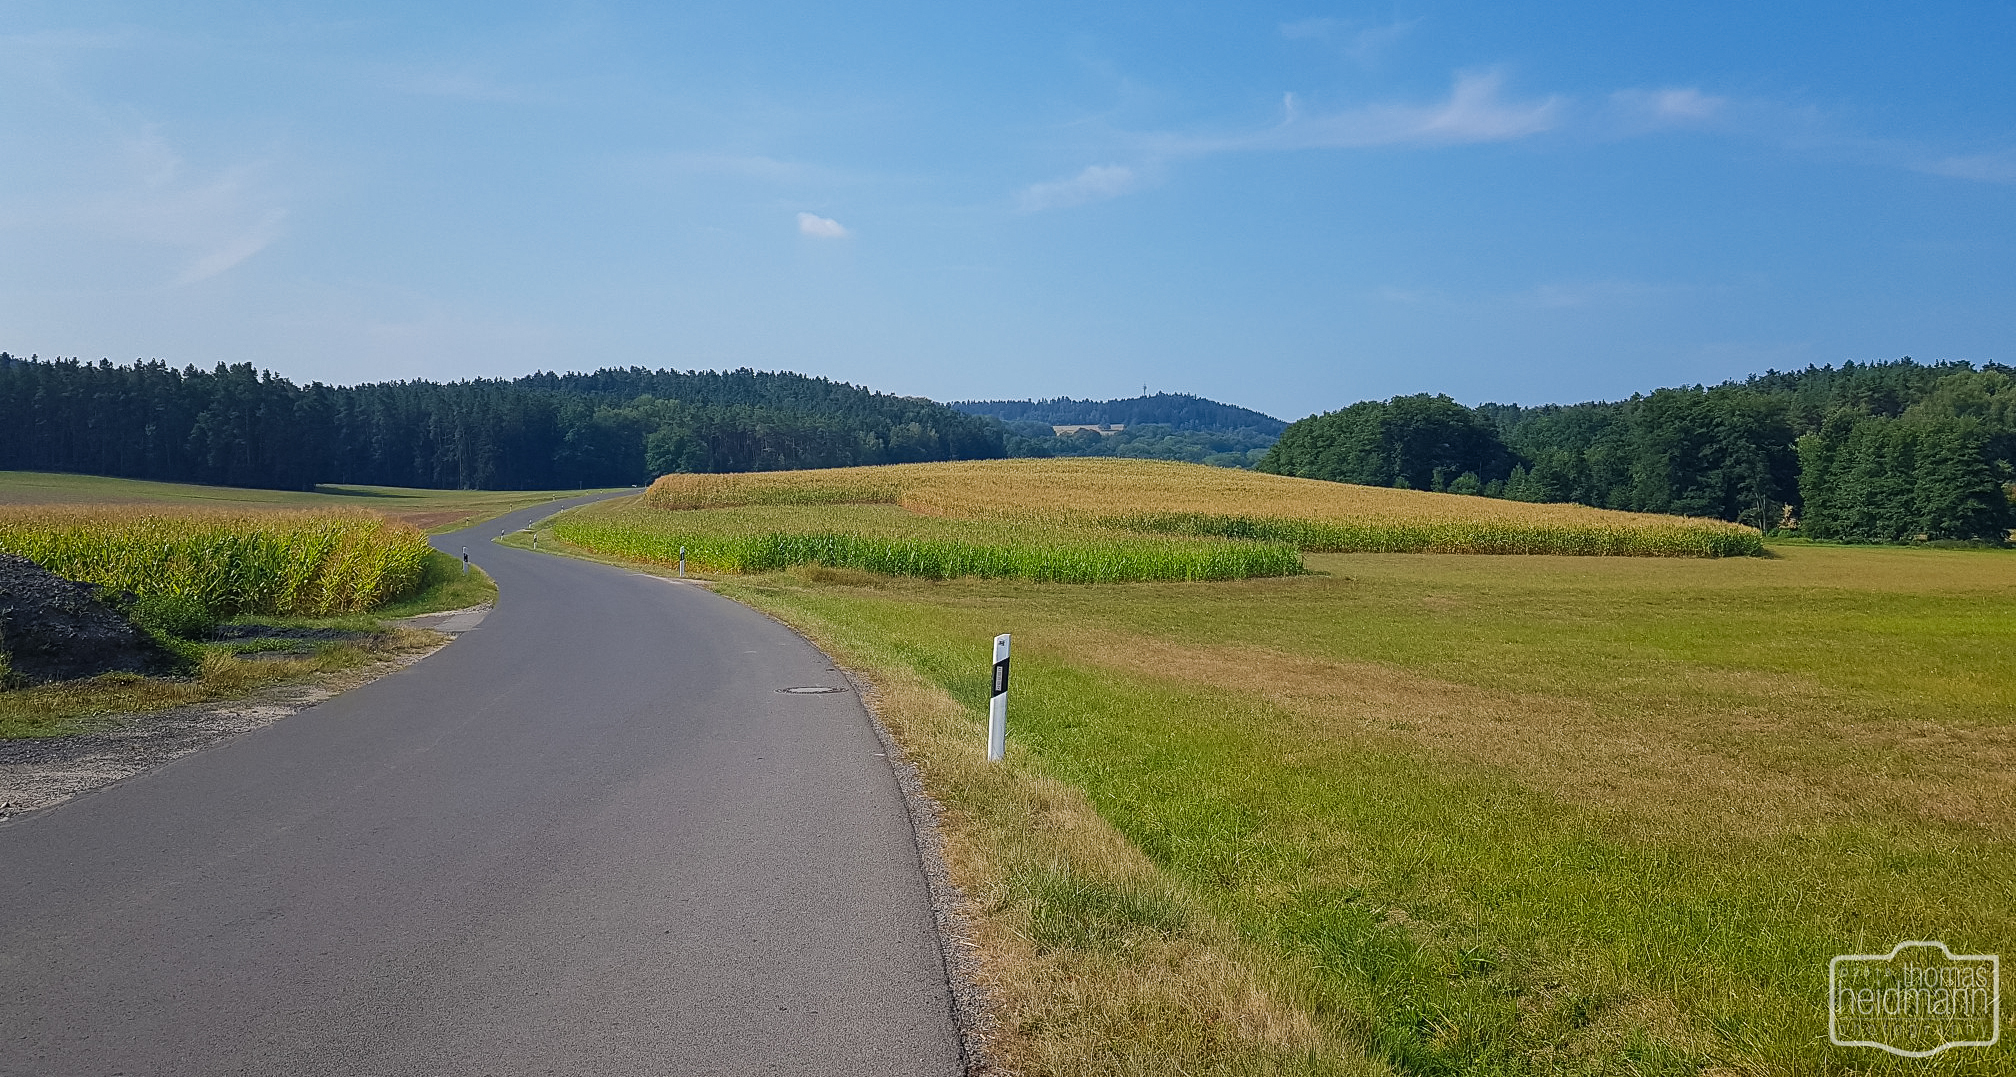 Bayreuth-Radtour durch schönste Landschaft